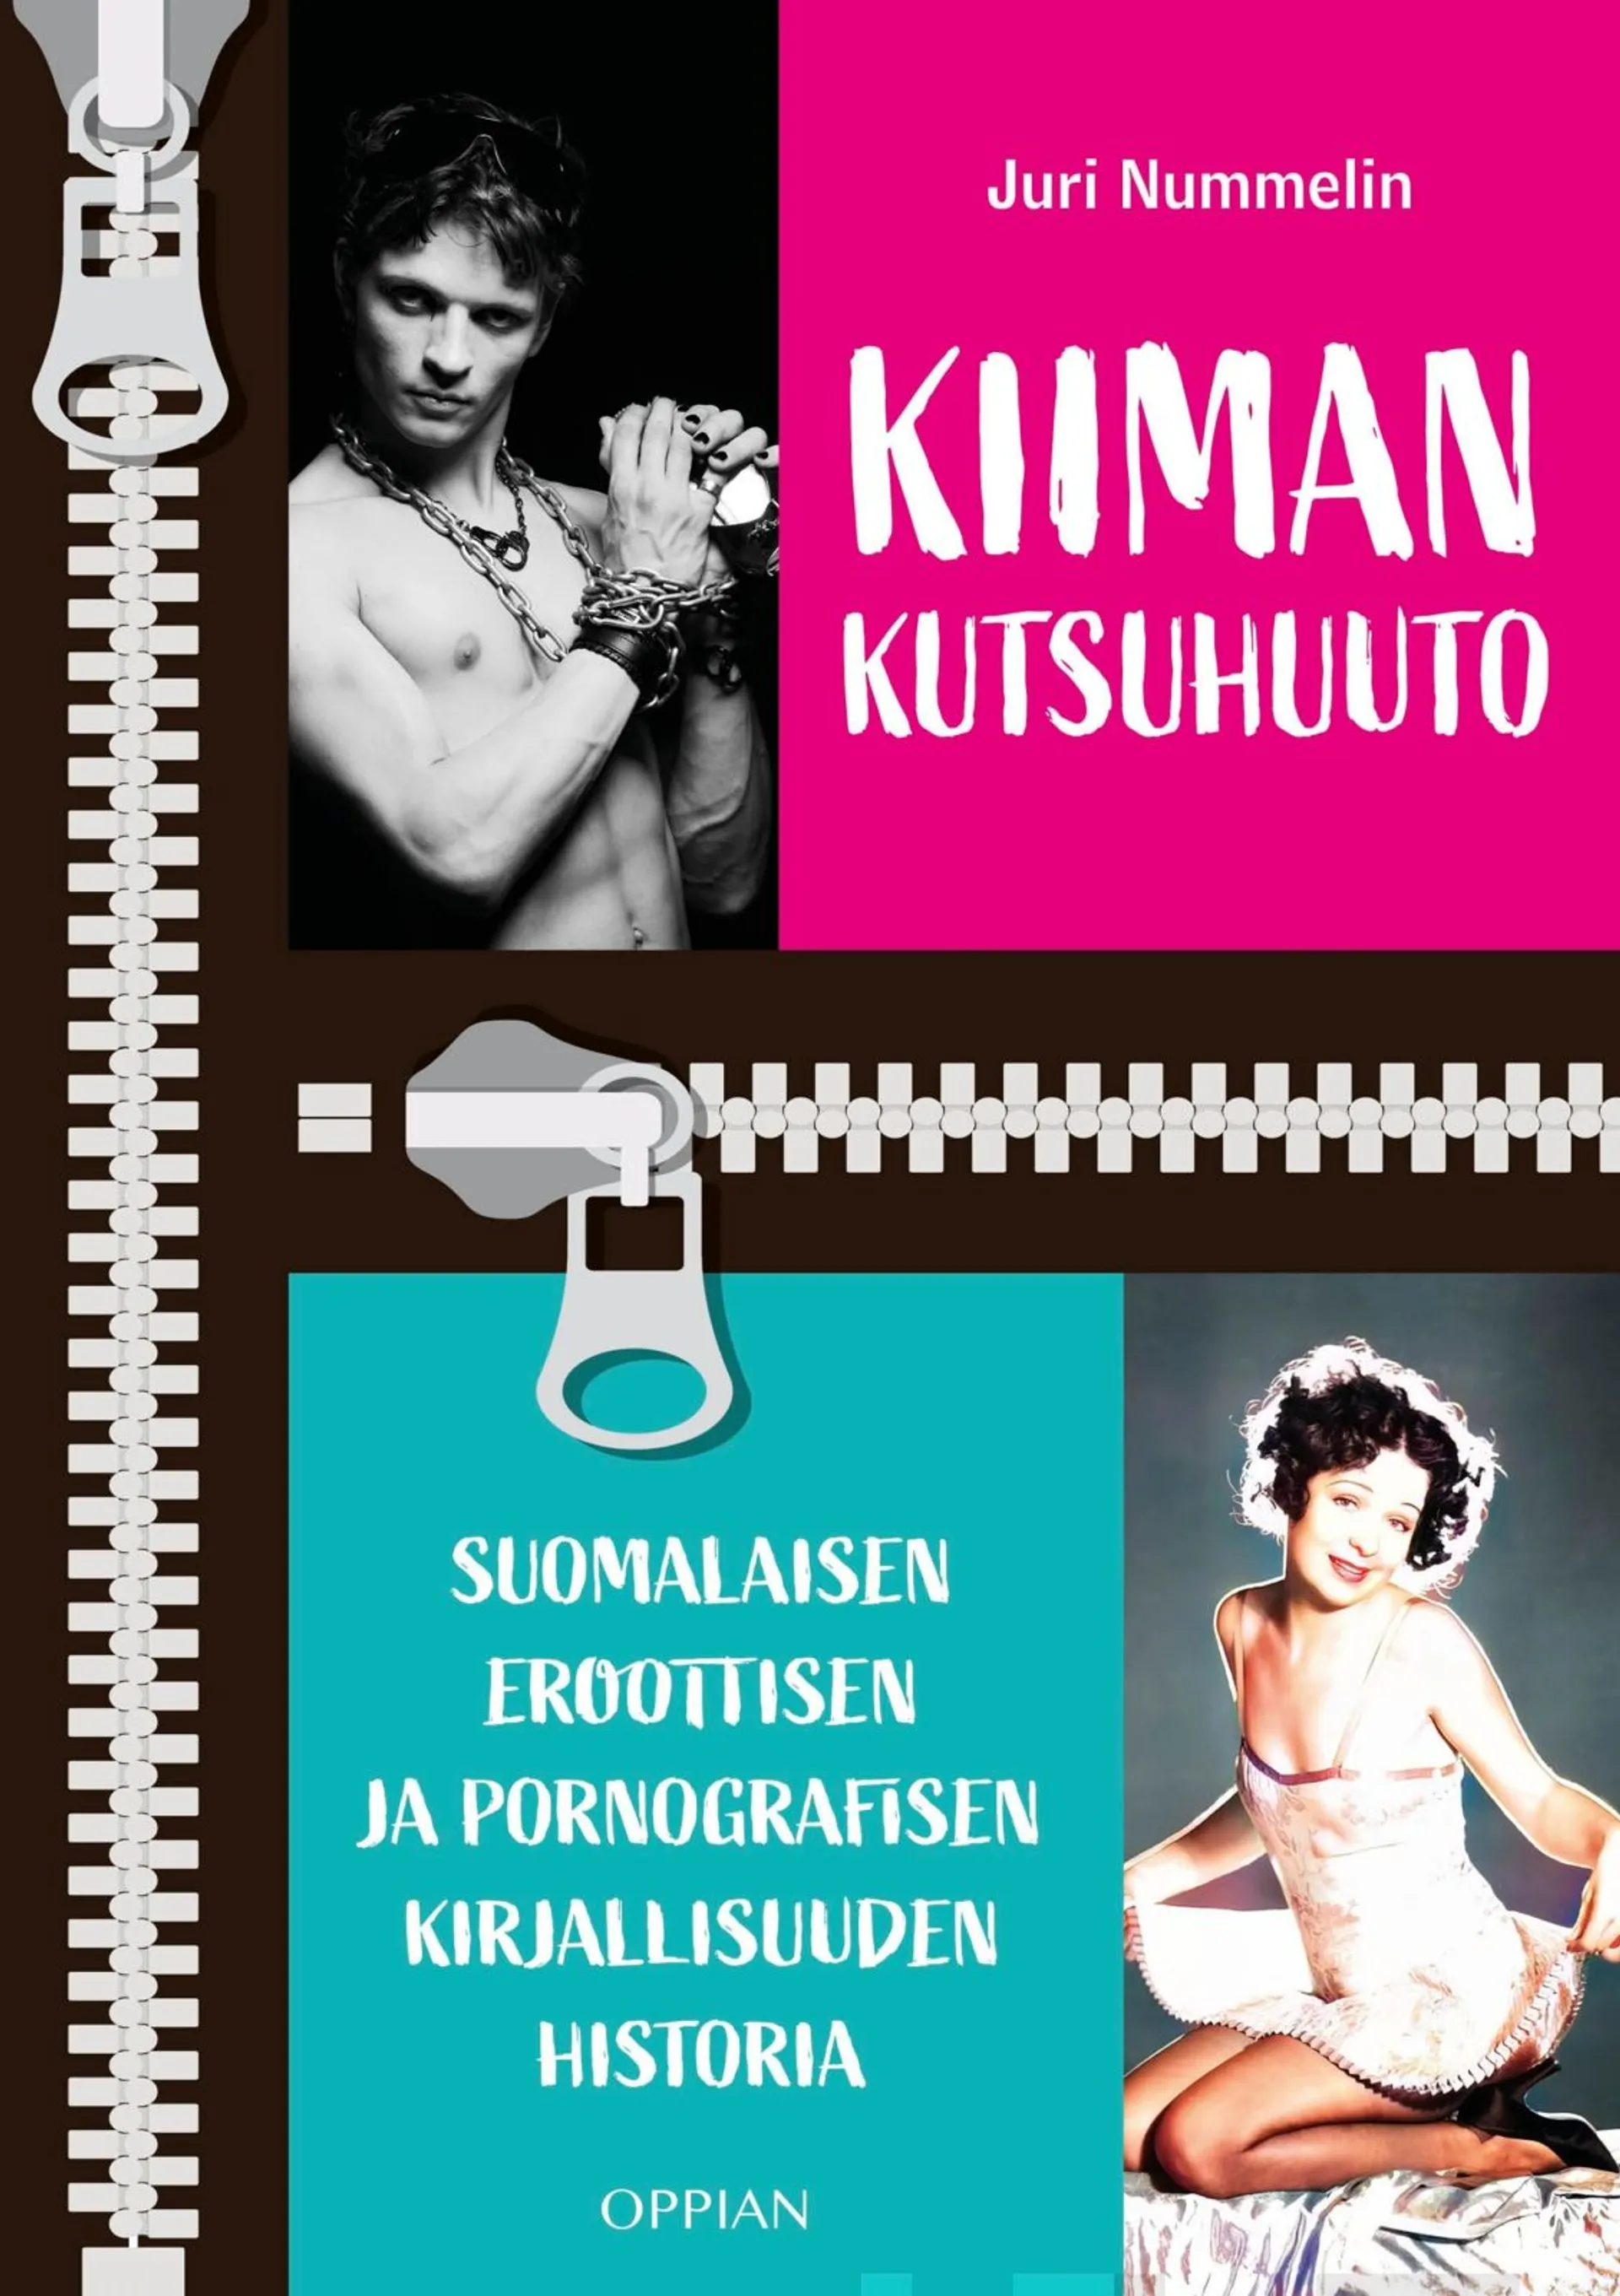 Nummelin, Kiiman kutsuhuuto - Suomalaisen eroottisen ja pornografisen kirjallisuuden historia